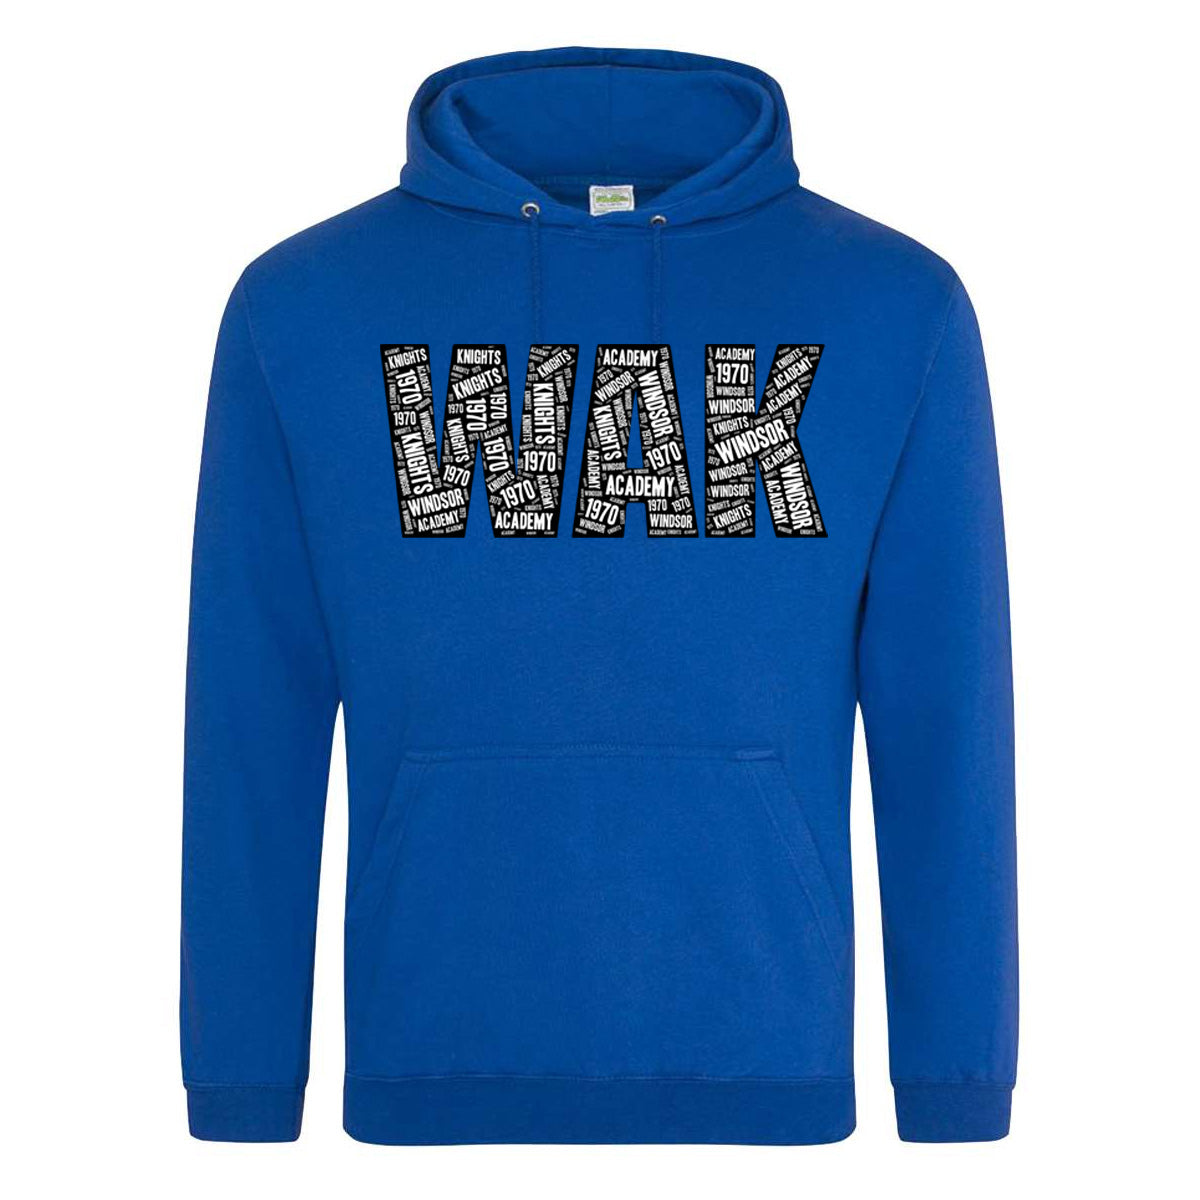 Windsor - WAK WordArt - Royal (Tee/Drifit/Hoodie/Sweatshirt) - Southern Grace Creations